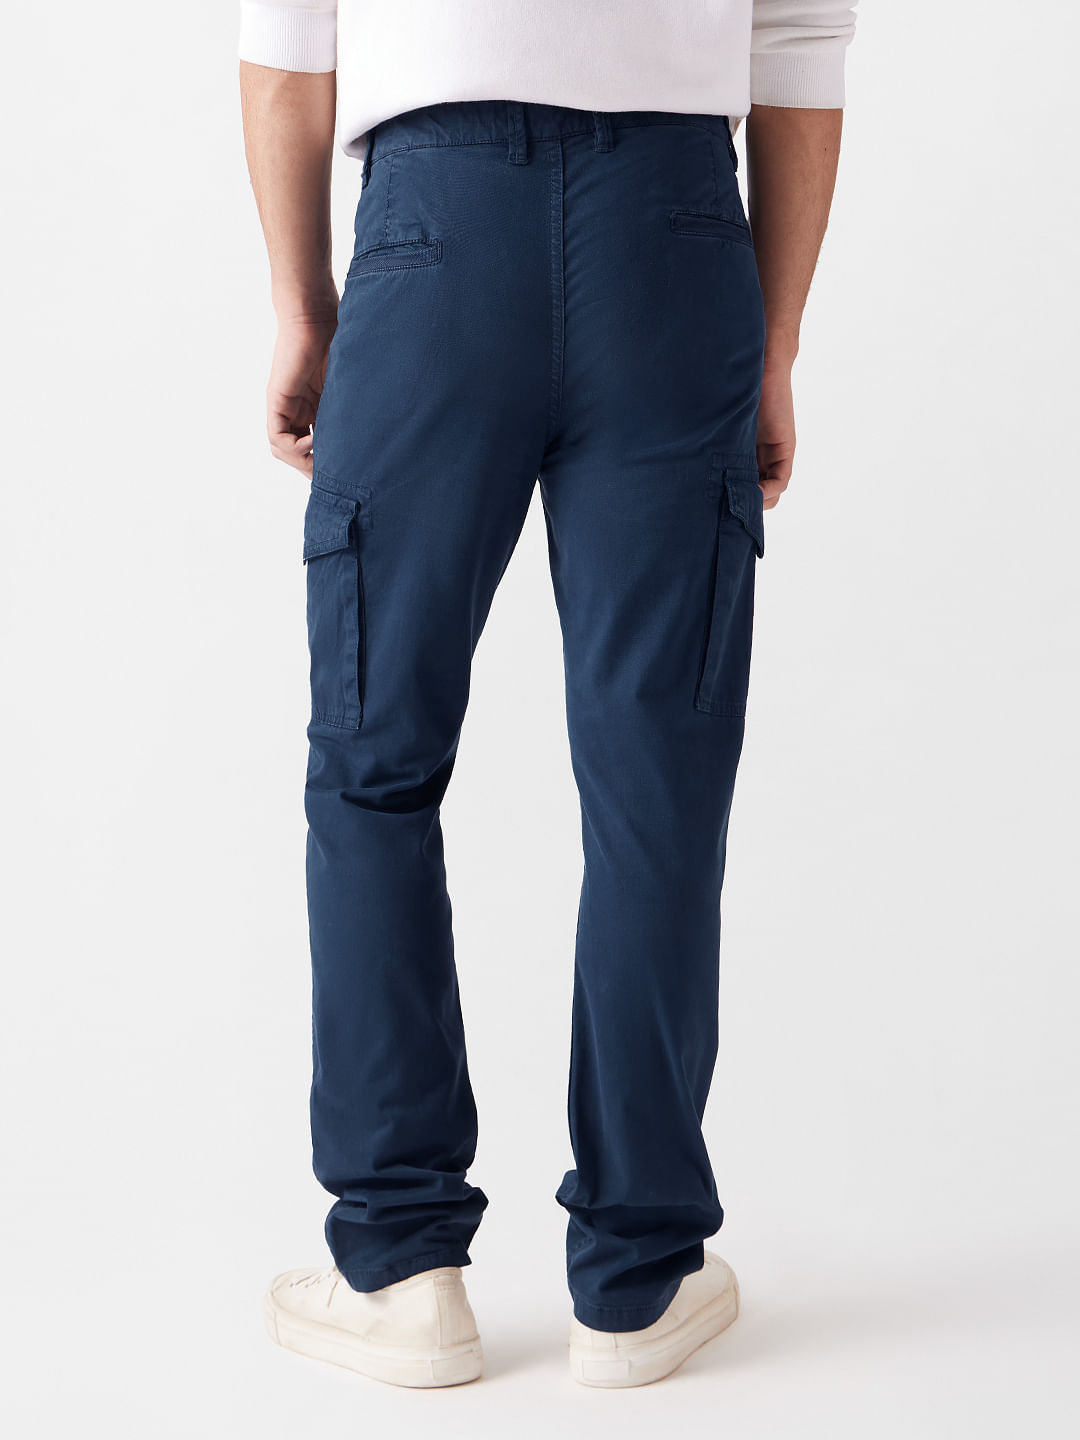 Buy Solids: Navy Blue Men Cargo Pants Online